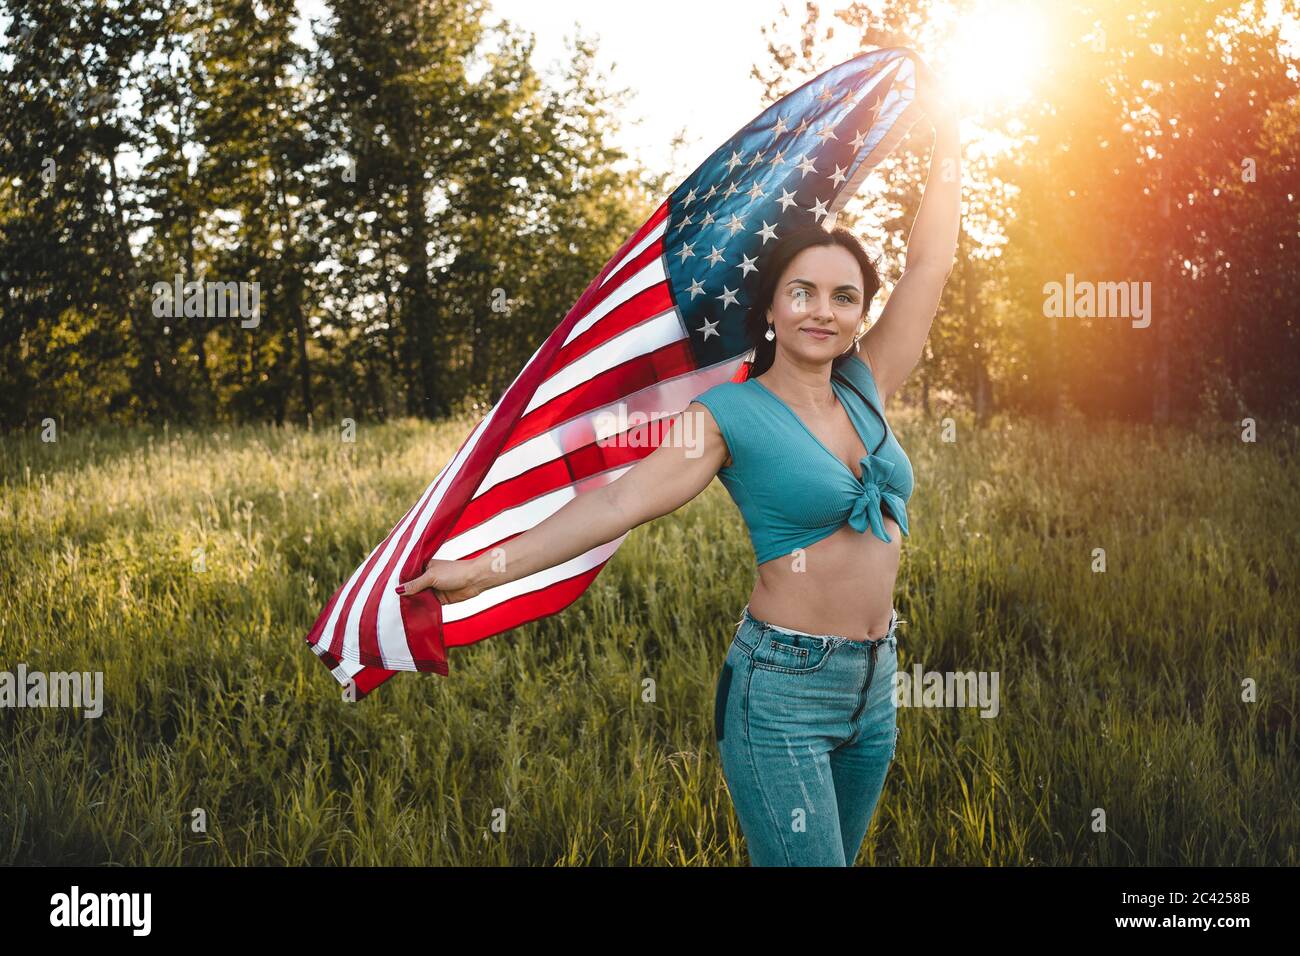 Donna che indossa jeans e la parte superiore blu che tiene una bandiera americana sopra la sua testa su una natura durante la celebrazione del tramonto. Foto Stock